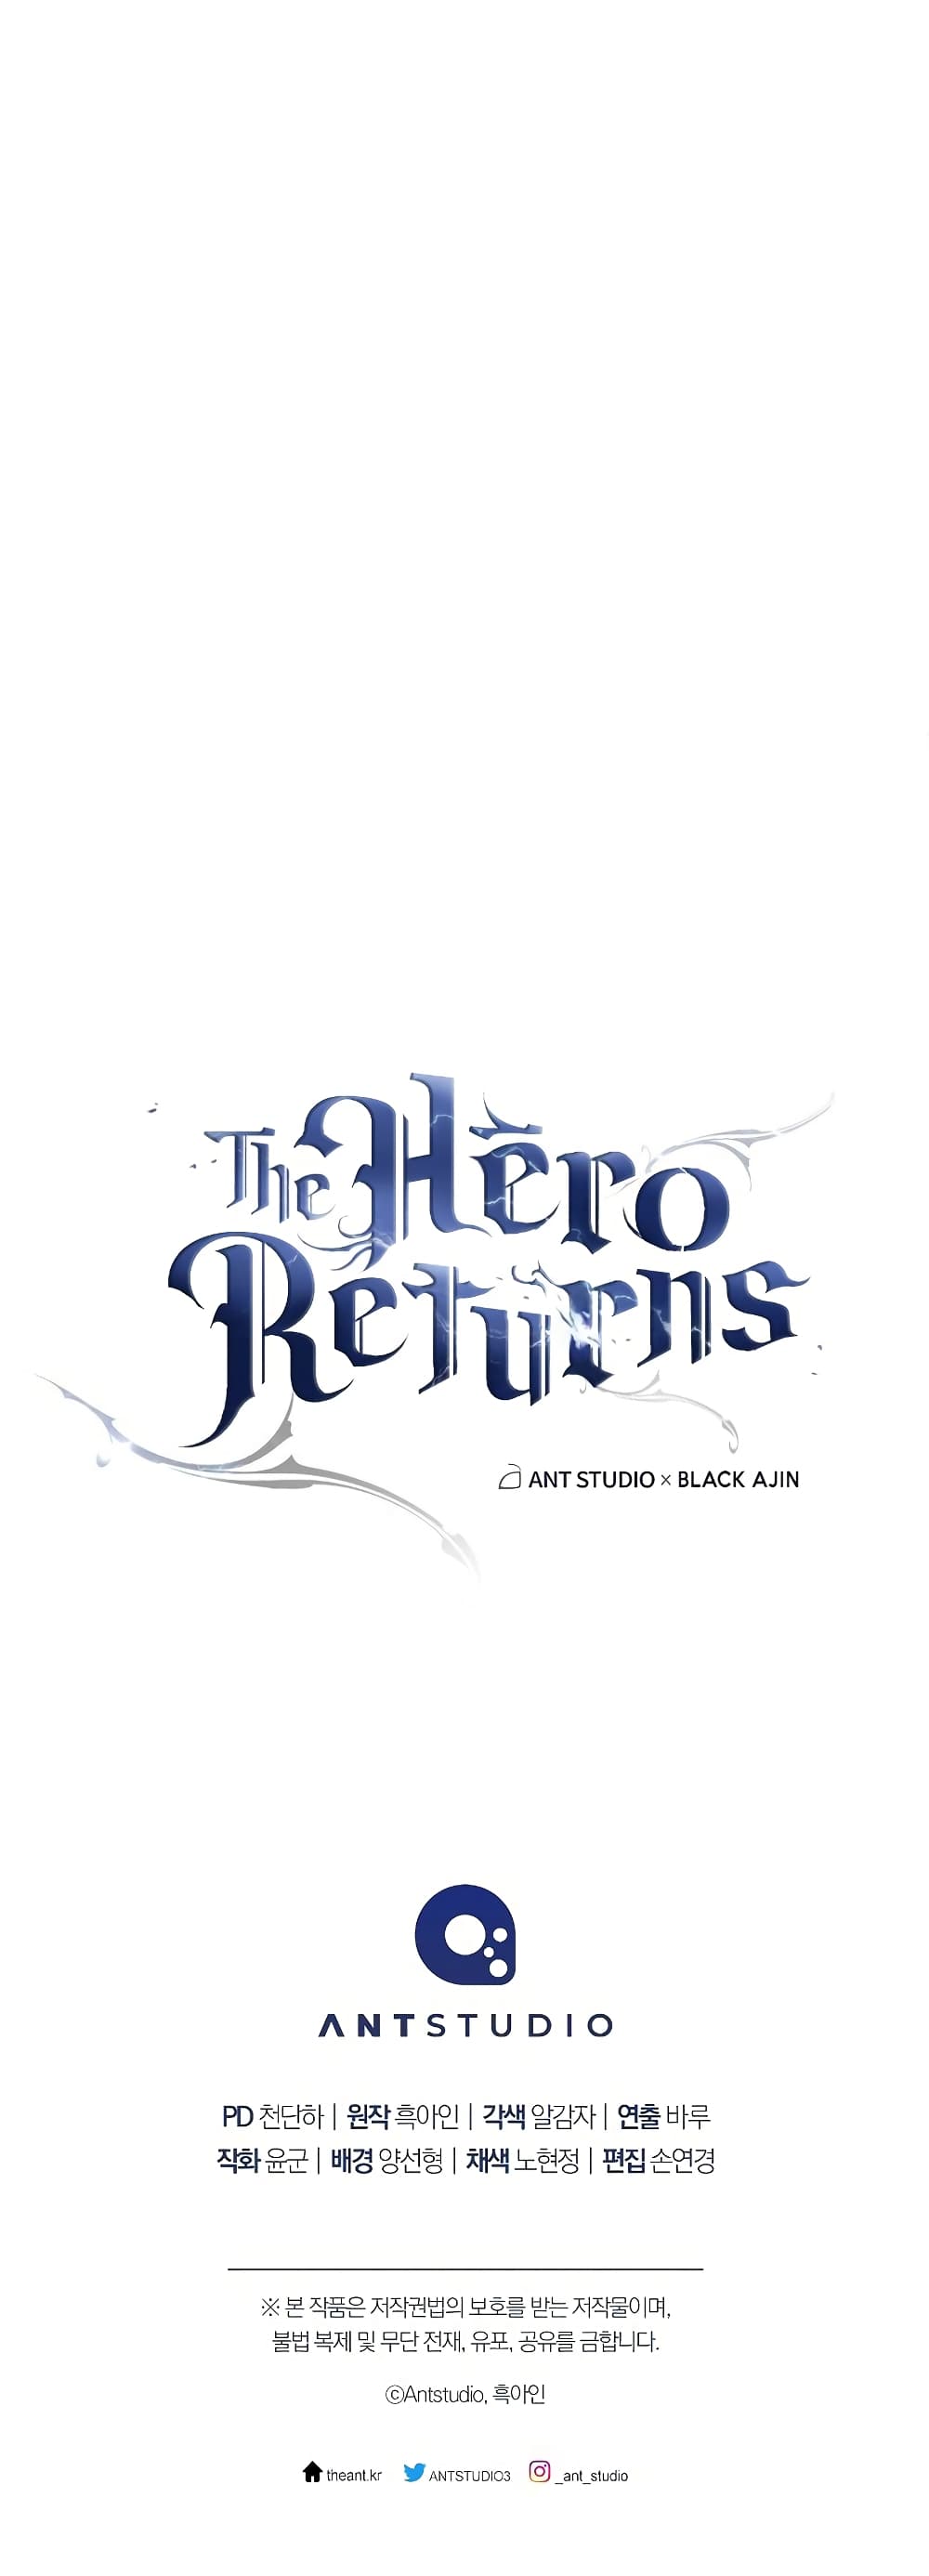 The Hero Returns 64-64